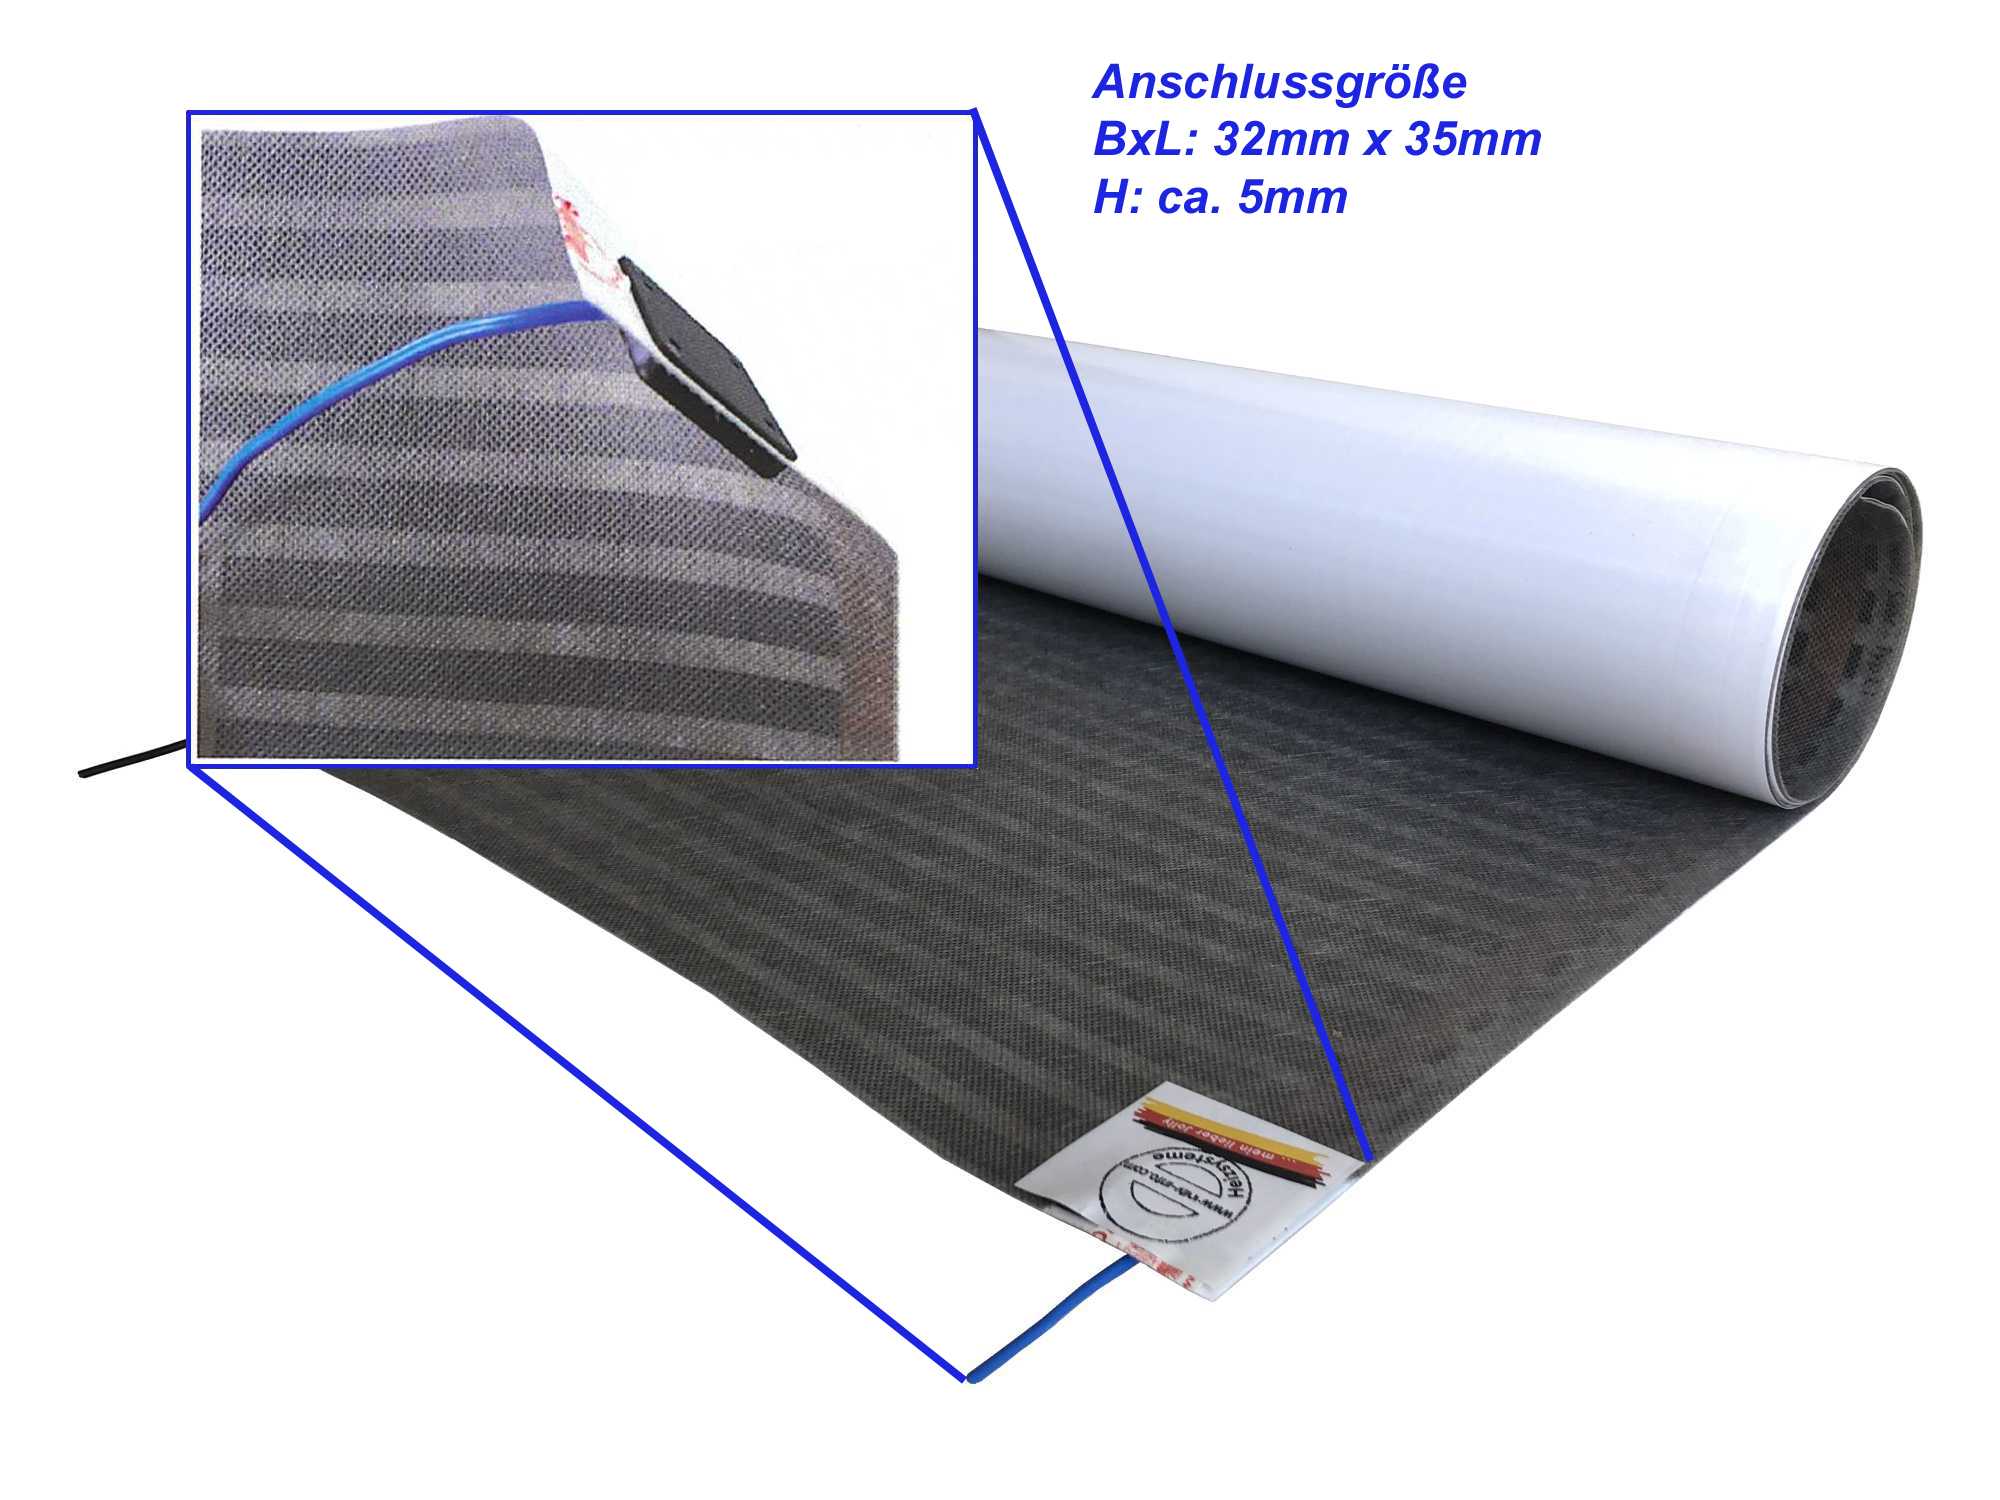 Elektrische Fußbodenheizung, superflache Heizfolie speziell für Parkett + Laminat, inkl. Anschlüsse und Regler